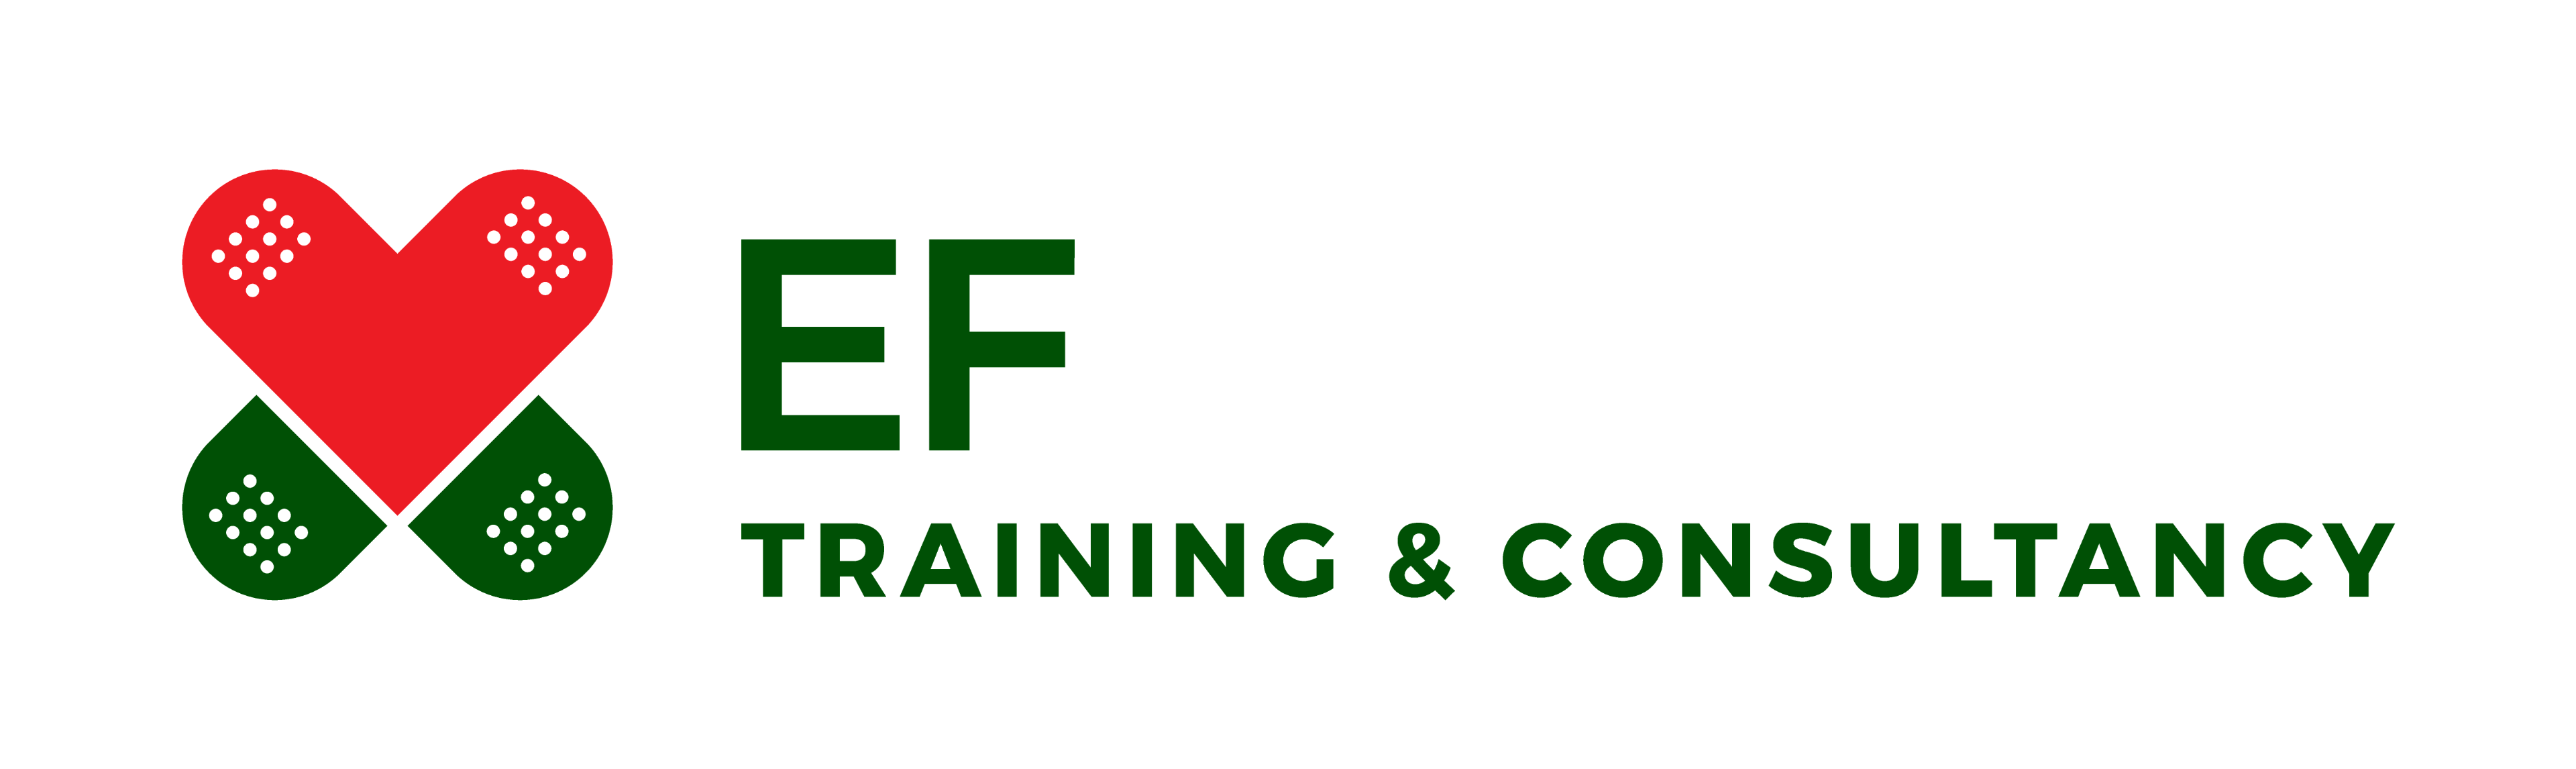 EF Training & Consultancy